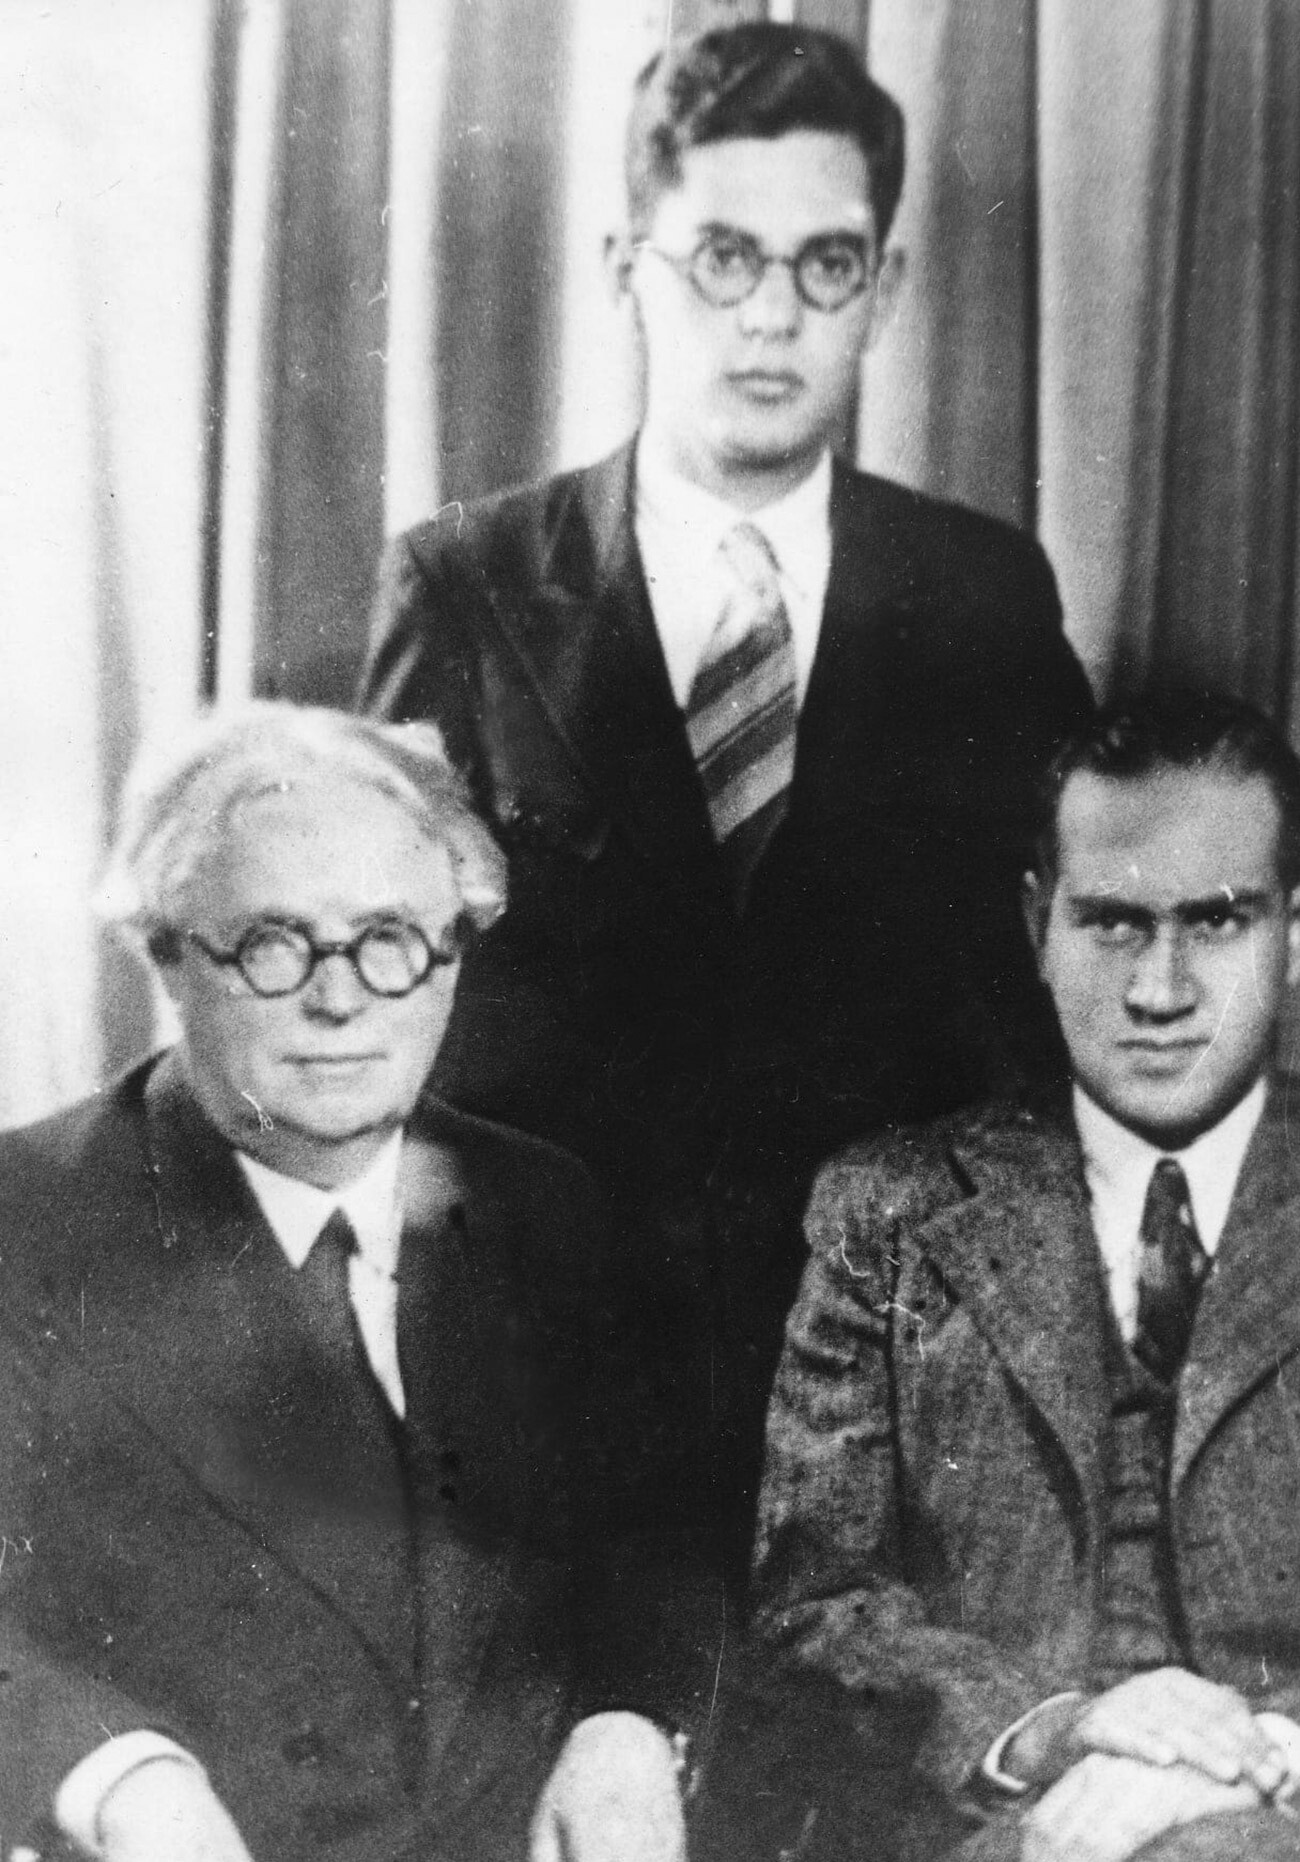 Leon Sachs (al centro) ai tempi in cui era studente del primo anno del Conservatorio di Mosca, con i suoi maestri David Ojstrakh (a destra) e Pjotr Stoljarskij (a sinistra)
